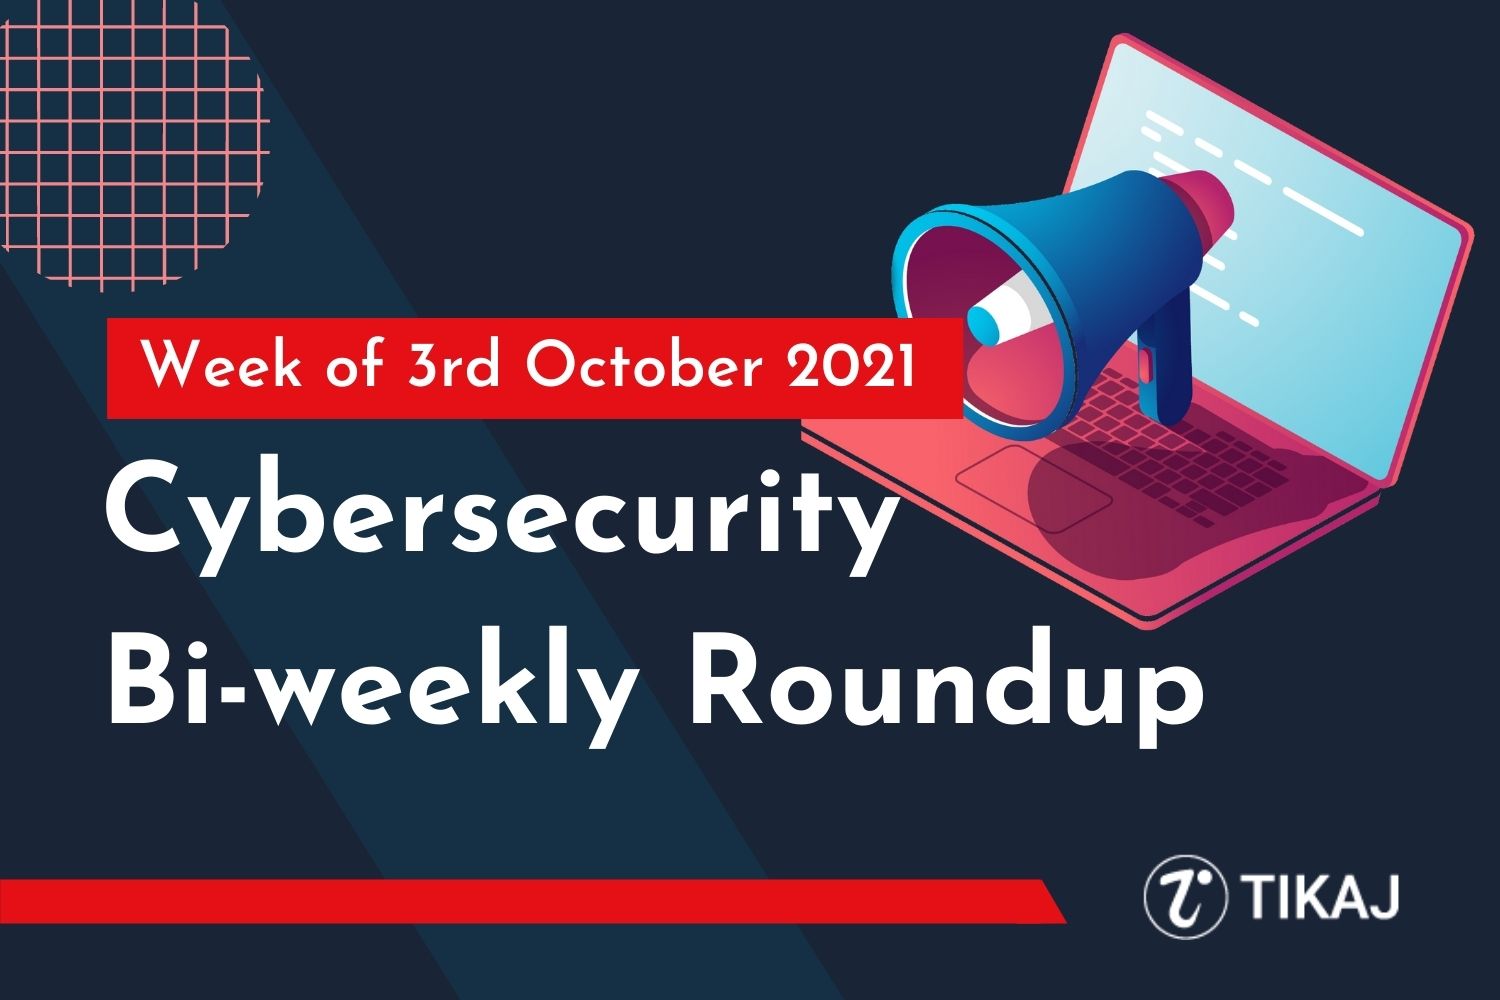 Cybersecurity Bi-weekly Roundup: Week of 3rd October